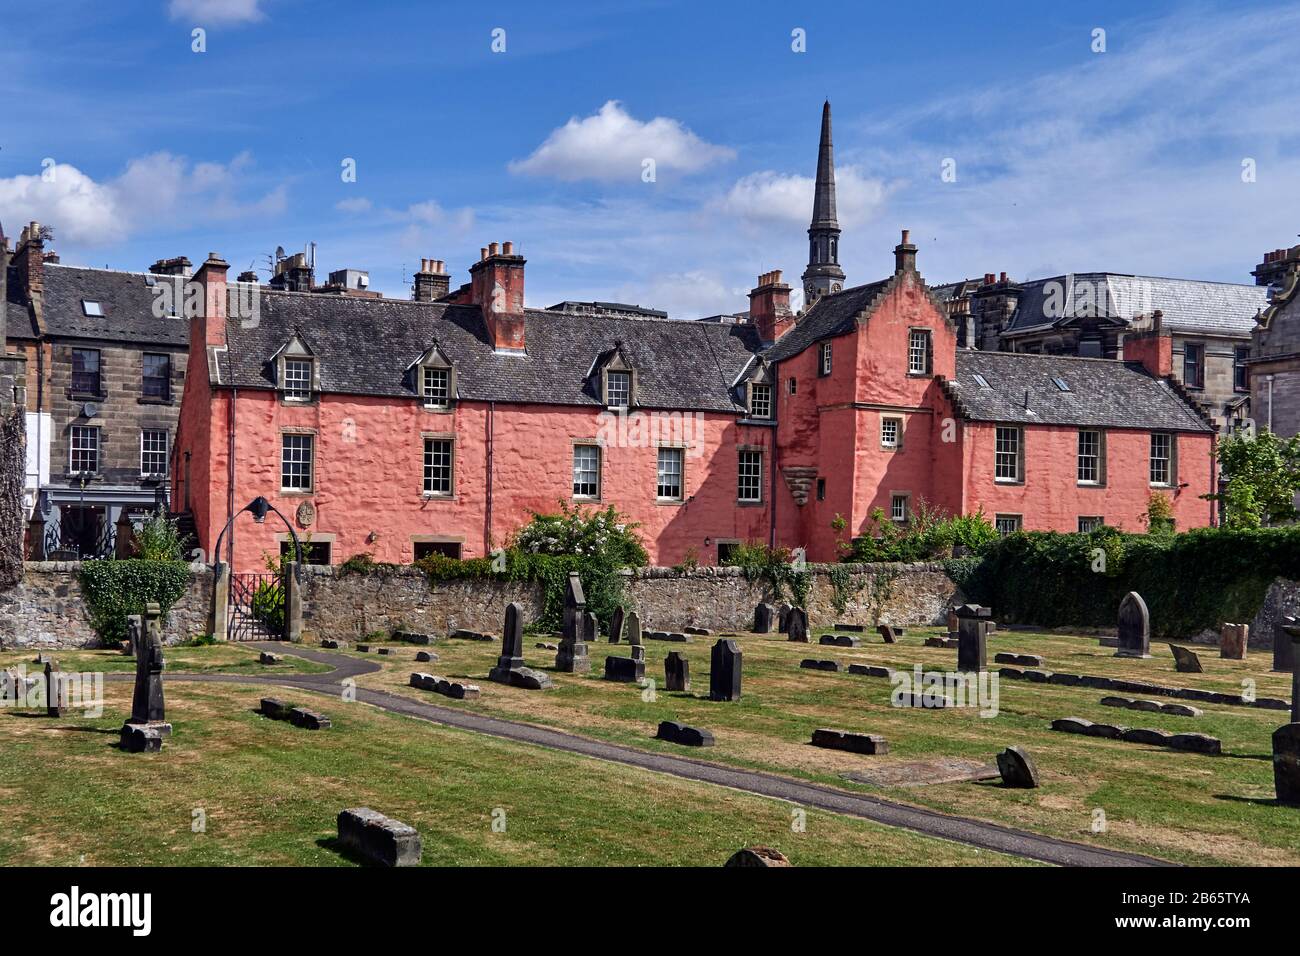 UK, Abbot House ist ein Kulturzentrum auf der Maygate in Dunfermline, Fife, Schottland. Sie liegt im Schatten der großen Abteikirche von Dunfermline. Das Gebäude befindet sich in einem Gebäude aus dem 16. Jahrhundert als ältestes überlebendes Gebäude in Dunfermline und als Überlebender des großen Feuers von Dunfermline im Jahr 1624[7] und ist ein Hinweis auf die sich wandelnden Stile der schottischen Architektur vom 16. Bis zum 20. Jahrhundert. Stockfoto